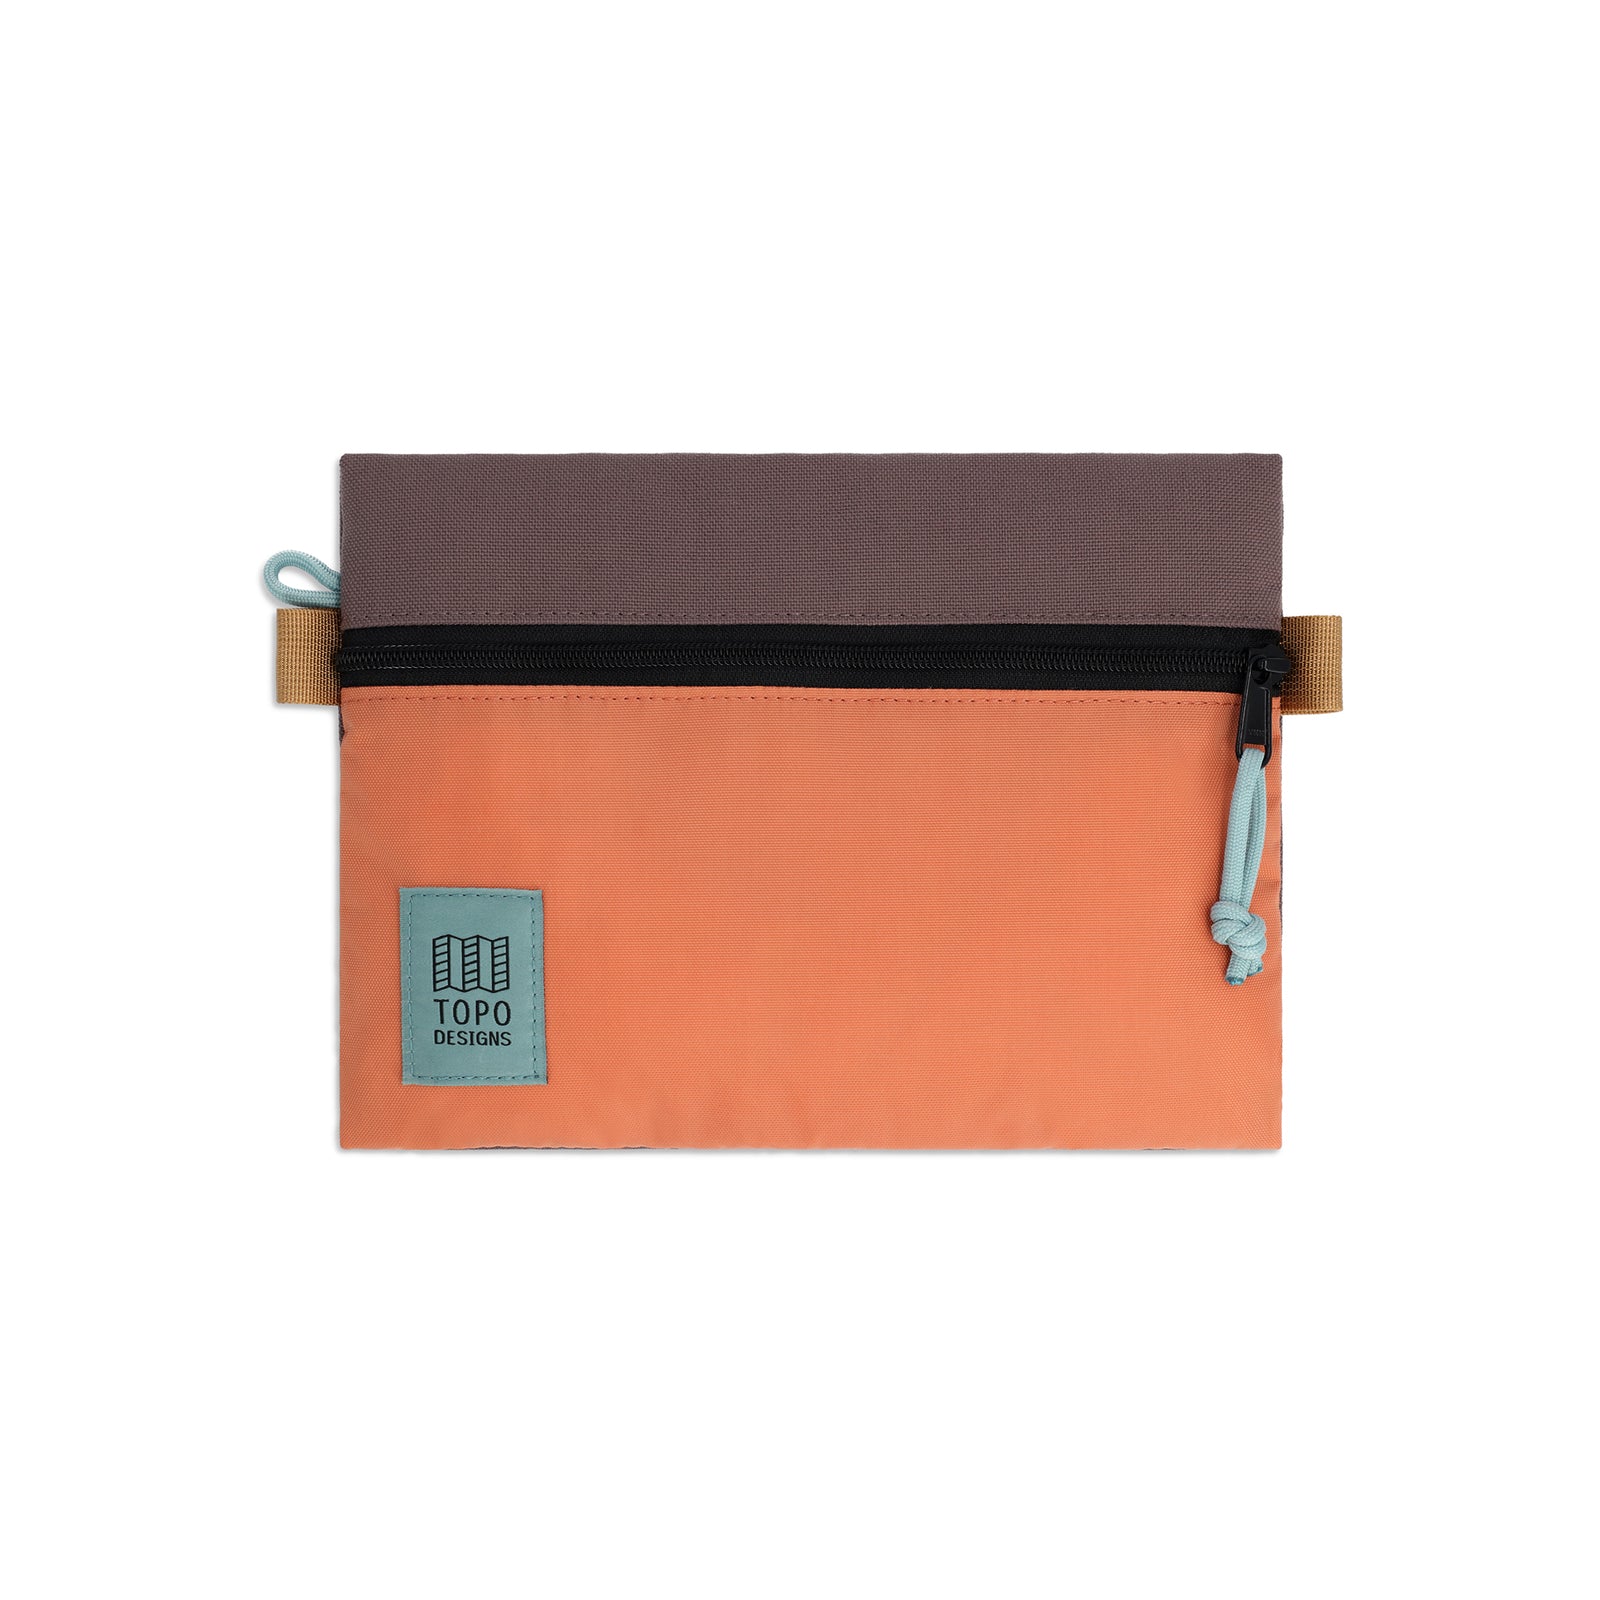 Topo Designs Accessory Bag medium in "Coral / Peppercorn"